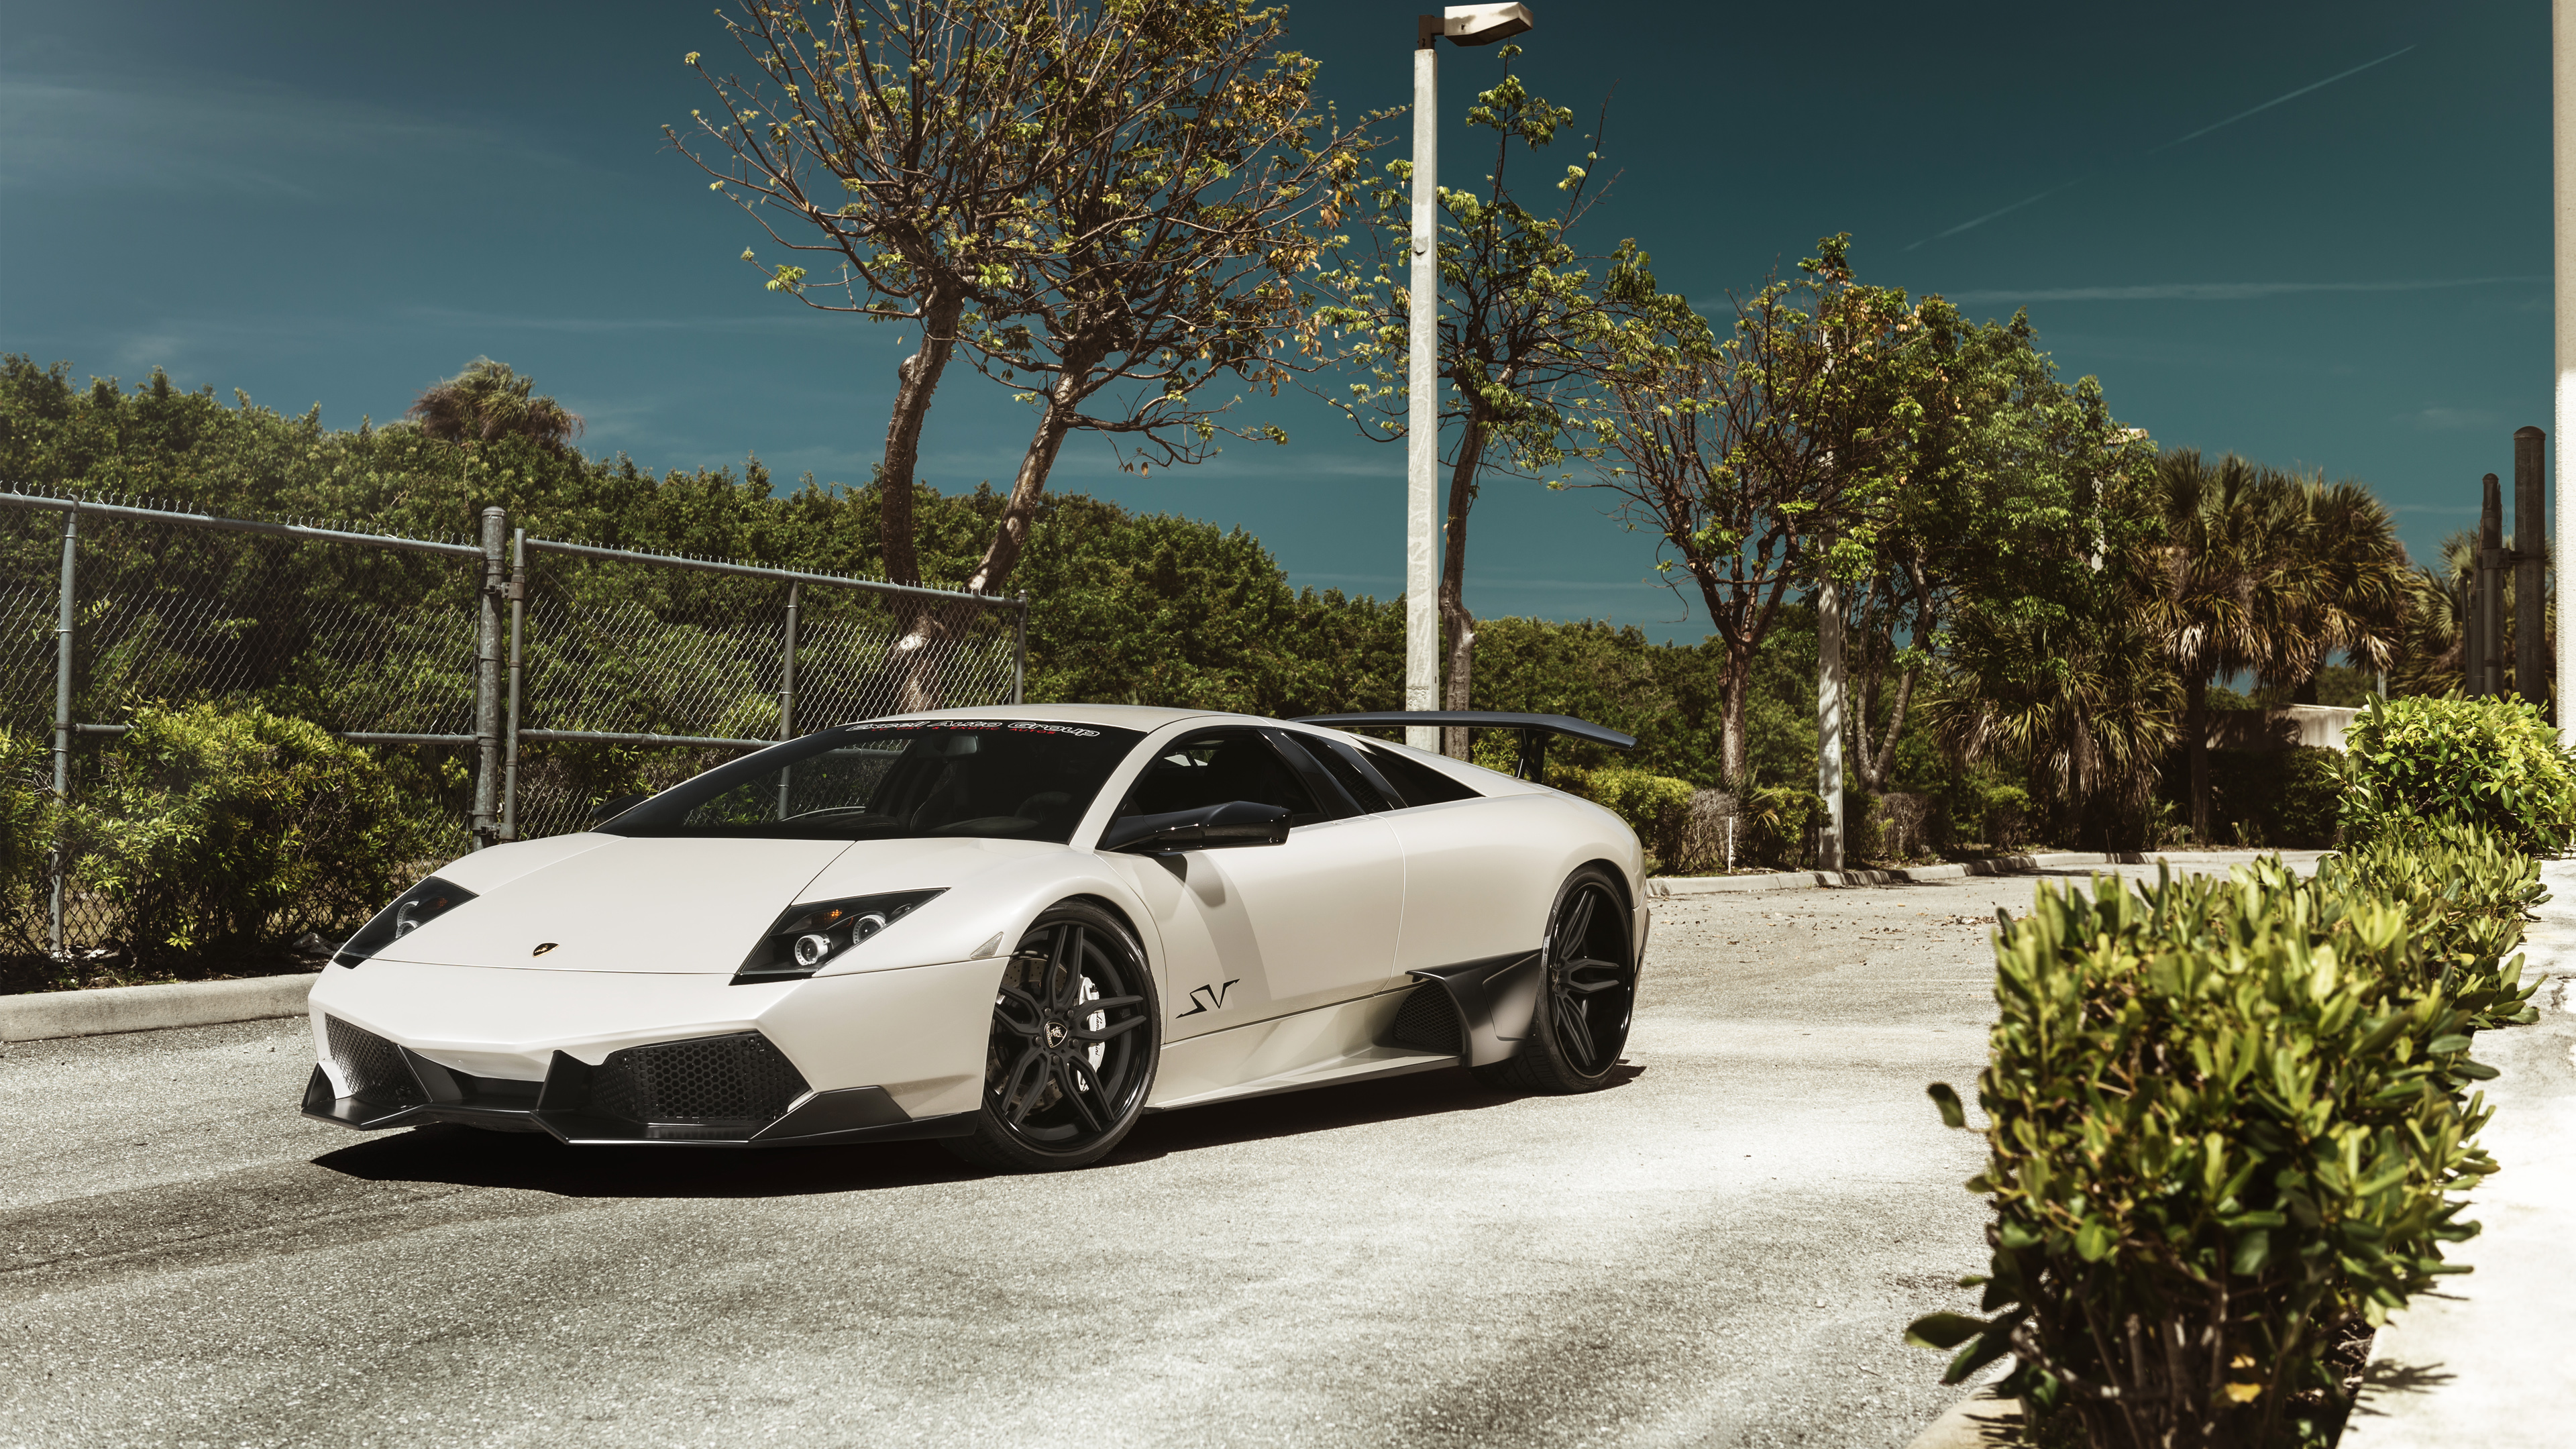 ADV1 Lamborghini Murcielago Wallpaper | HD Car Wallpapers ...